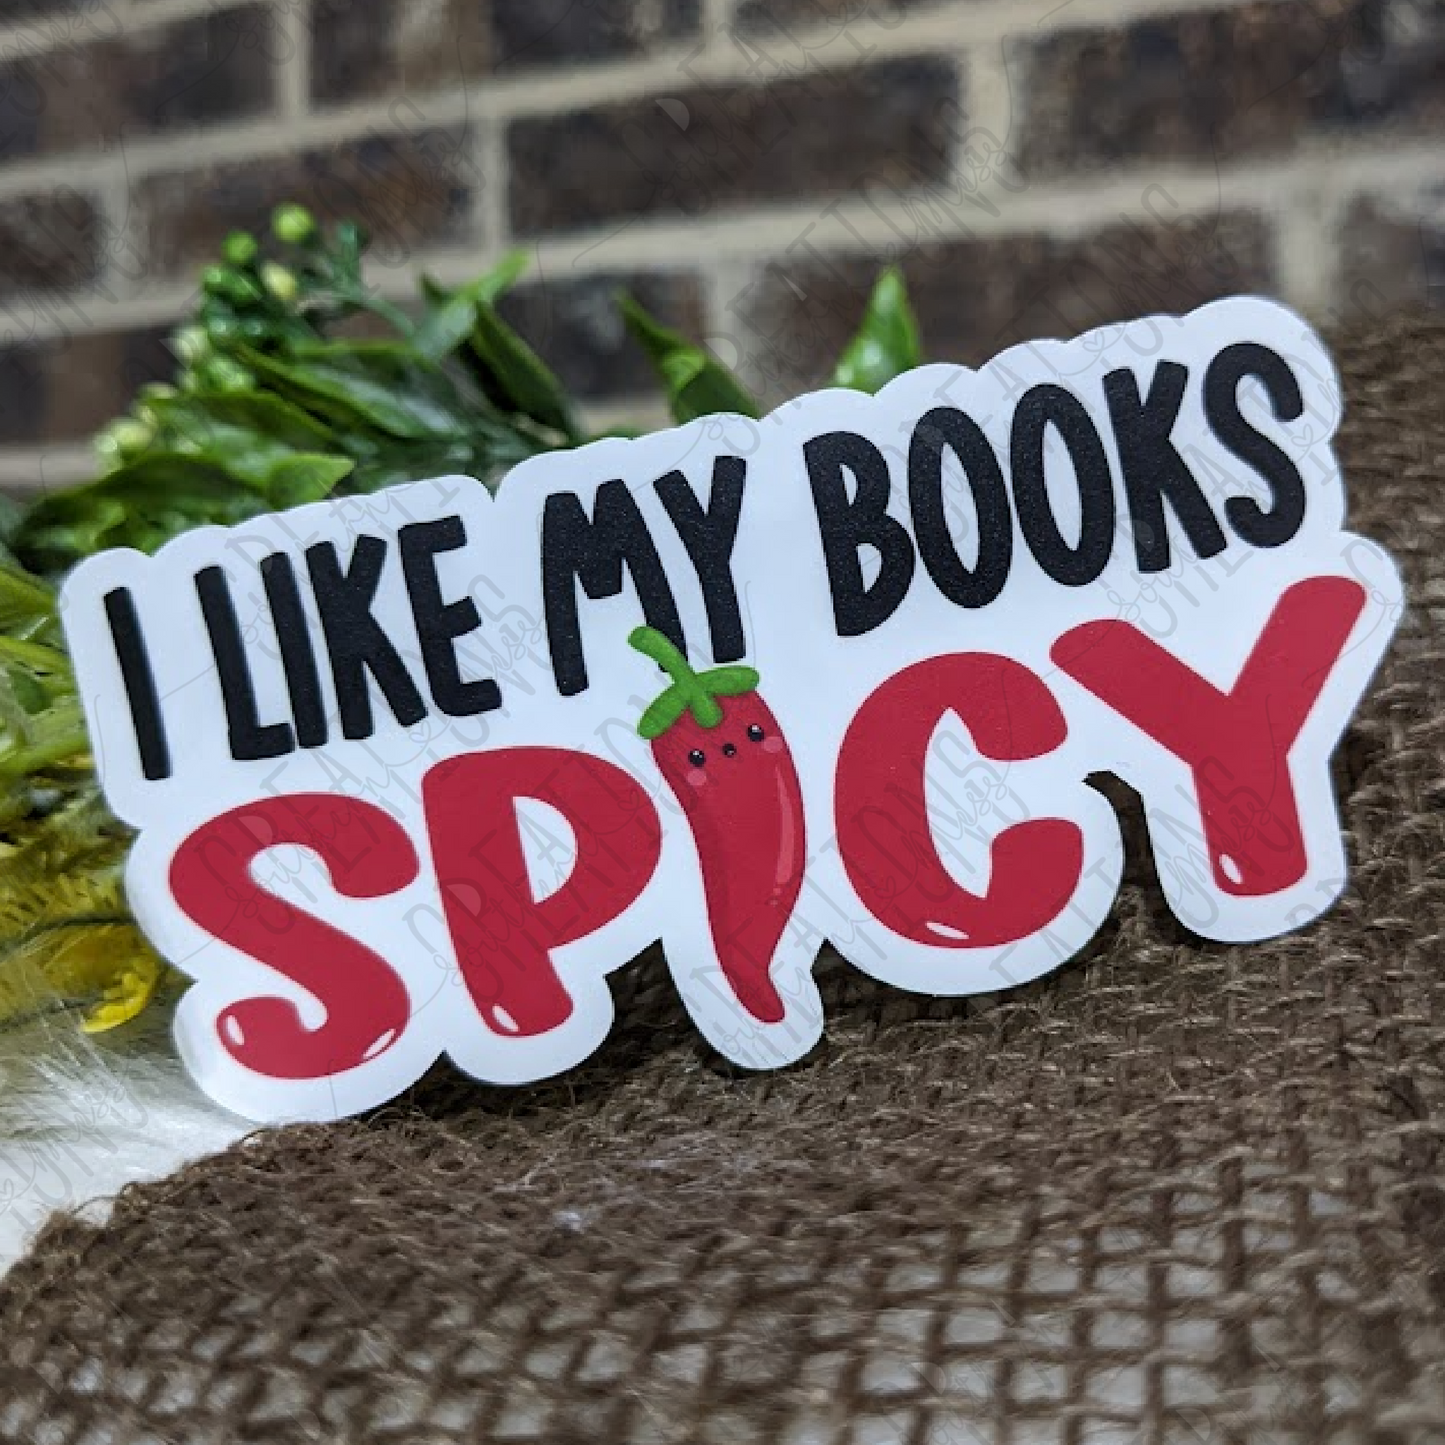 I Like My Books Spicy